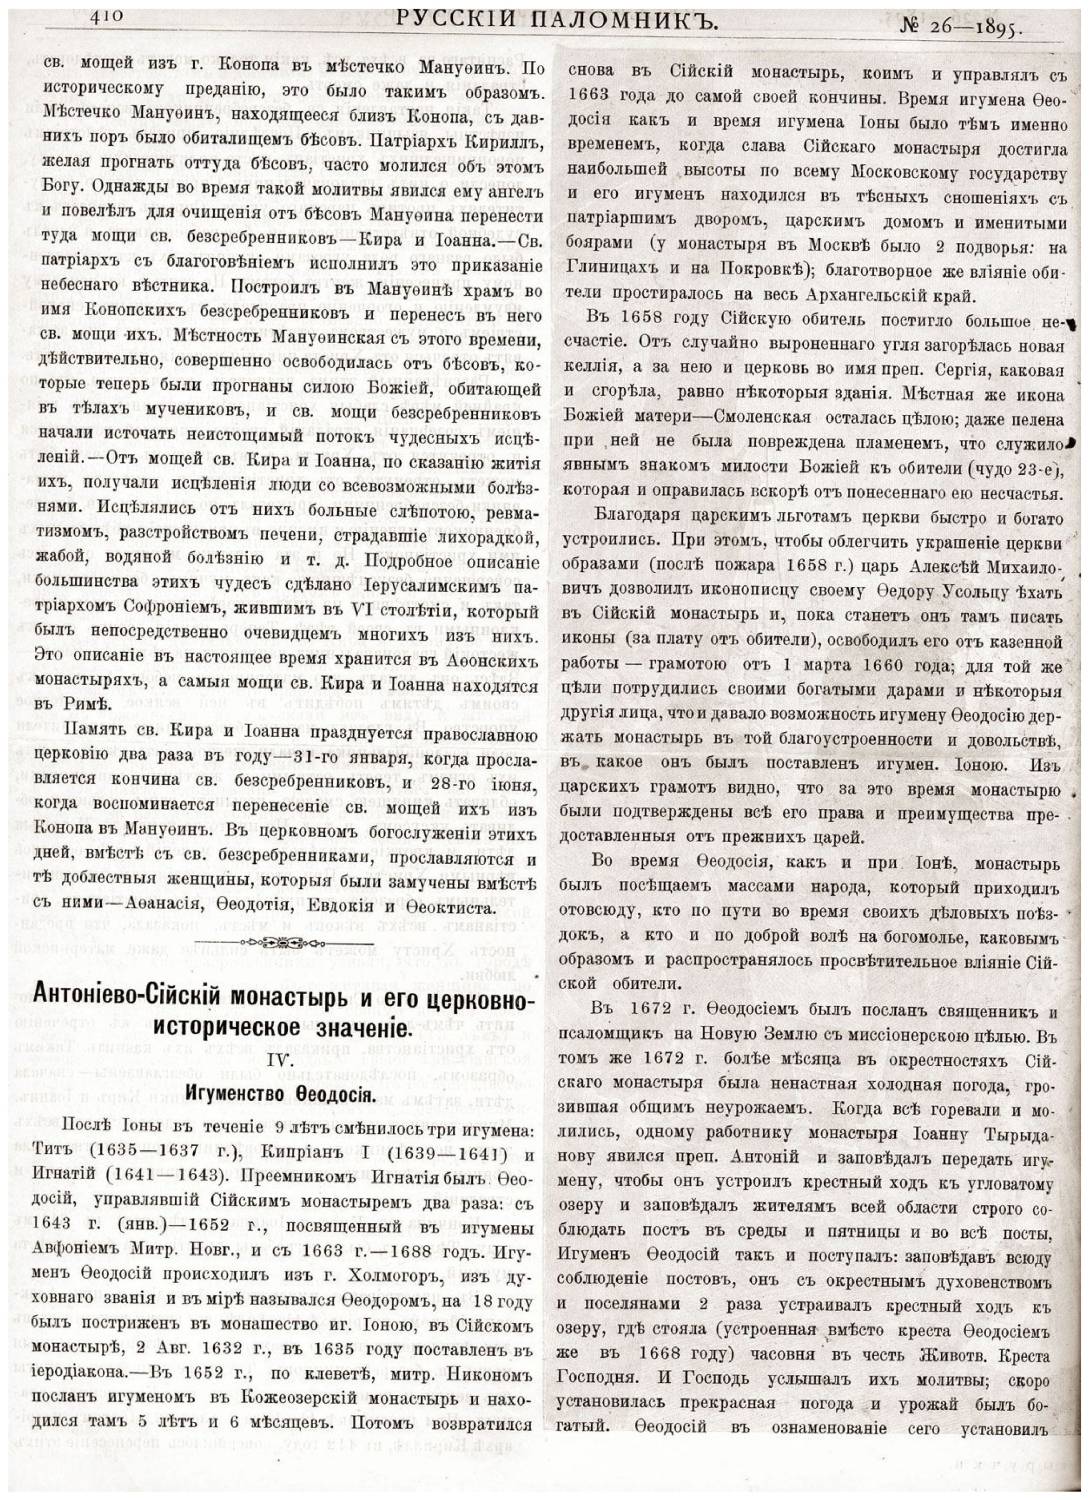 «Русскiй паломникъ». №26, 1895 г. (+ №№ за 1886, 1888, 1892, 1895, 1906 гг.)